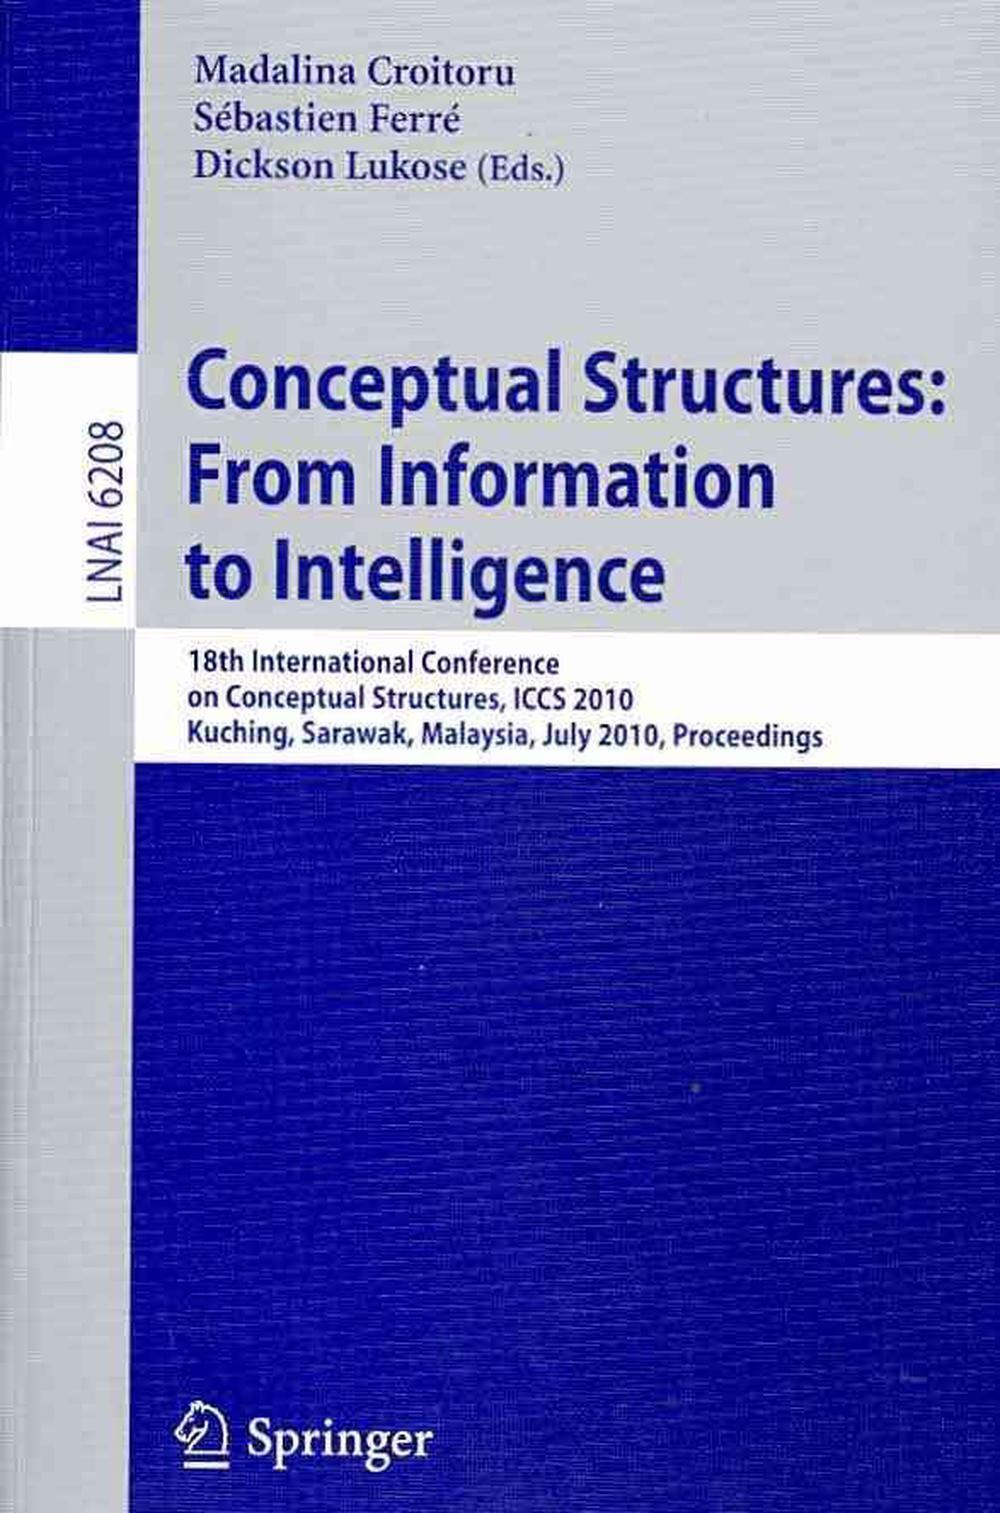 Konzeptionelle Strukturen: Von der Information zur Intelligenz: 18. Internationale Konferenz - Madalina Croitoru, Dickson Lukose, Sebastien Ferre